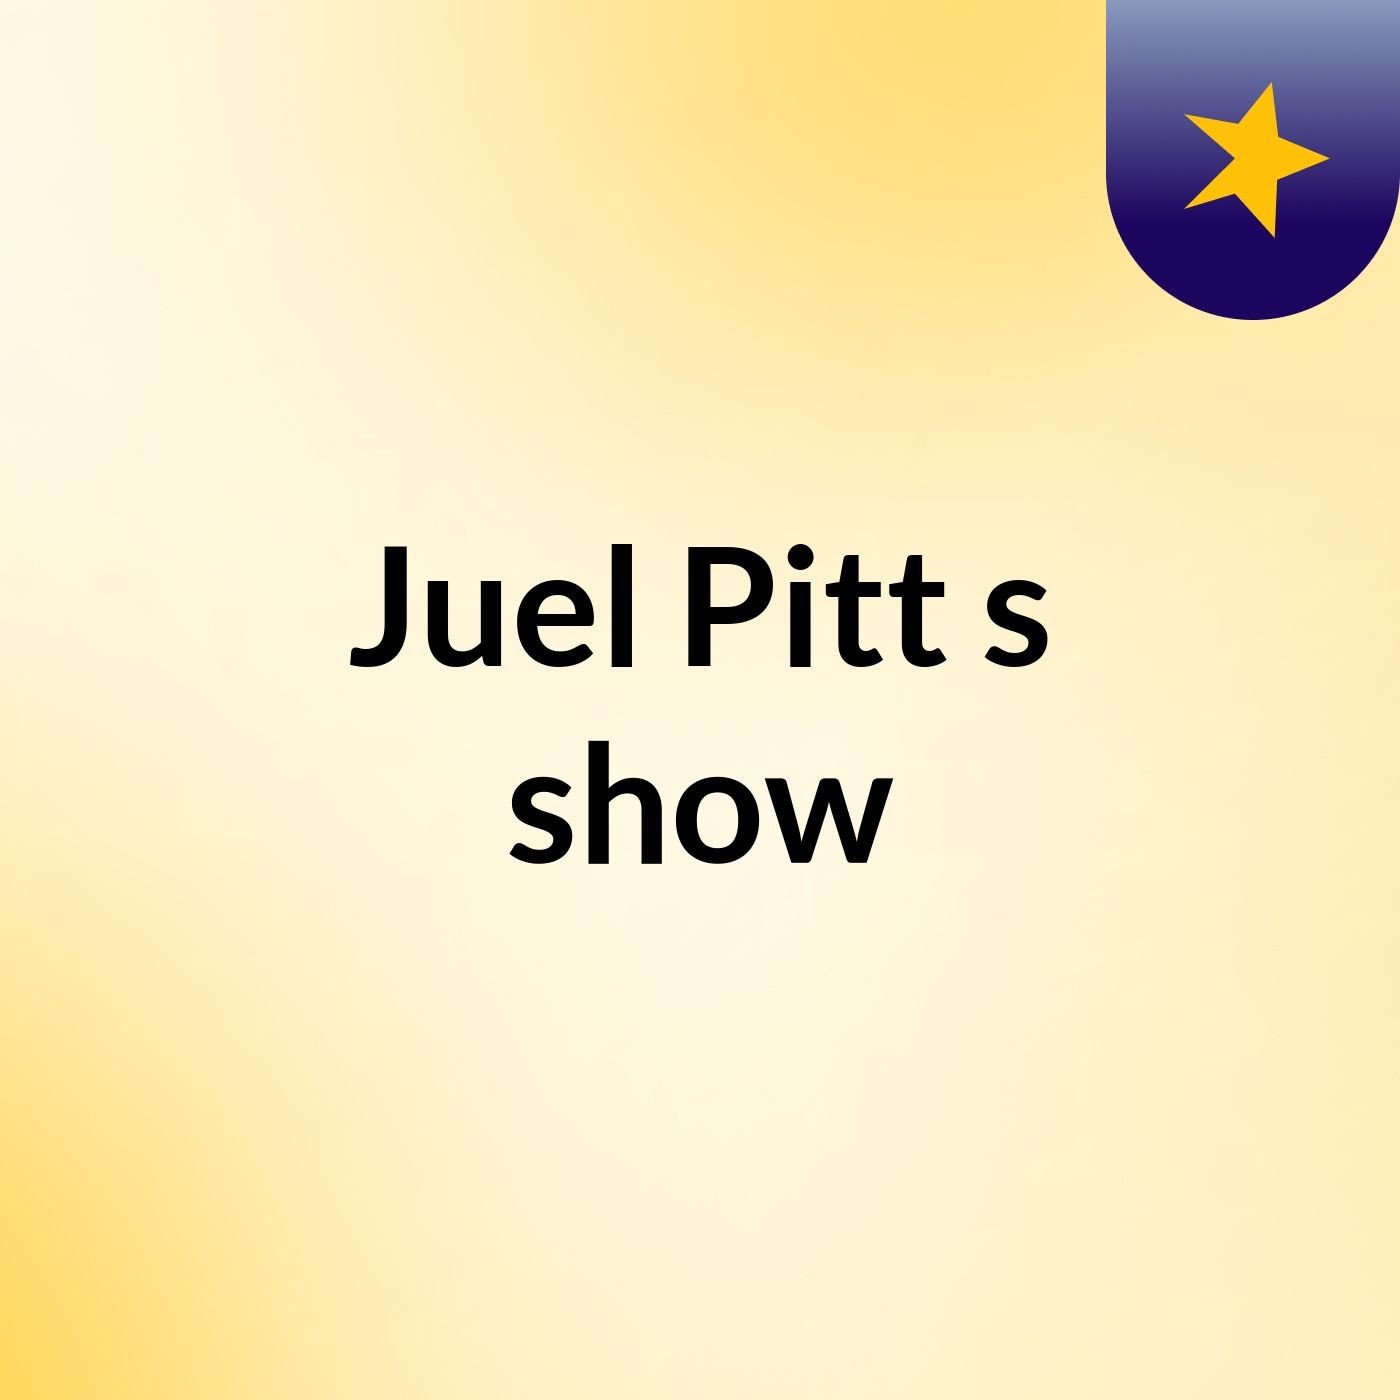 Juel Pitt's show